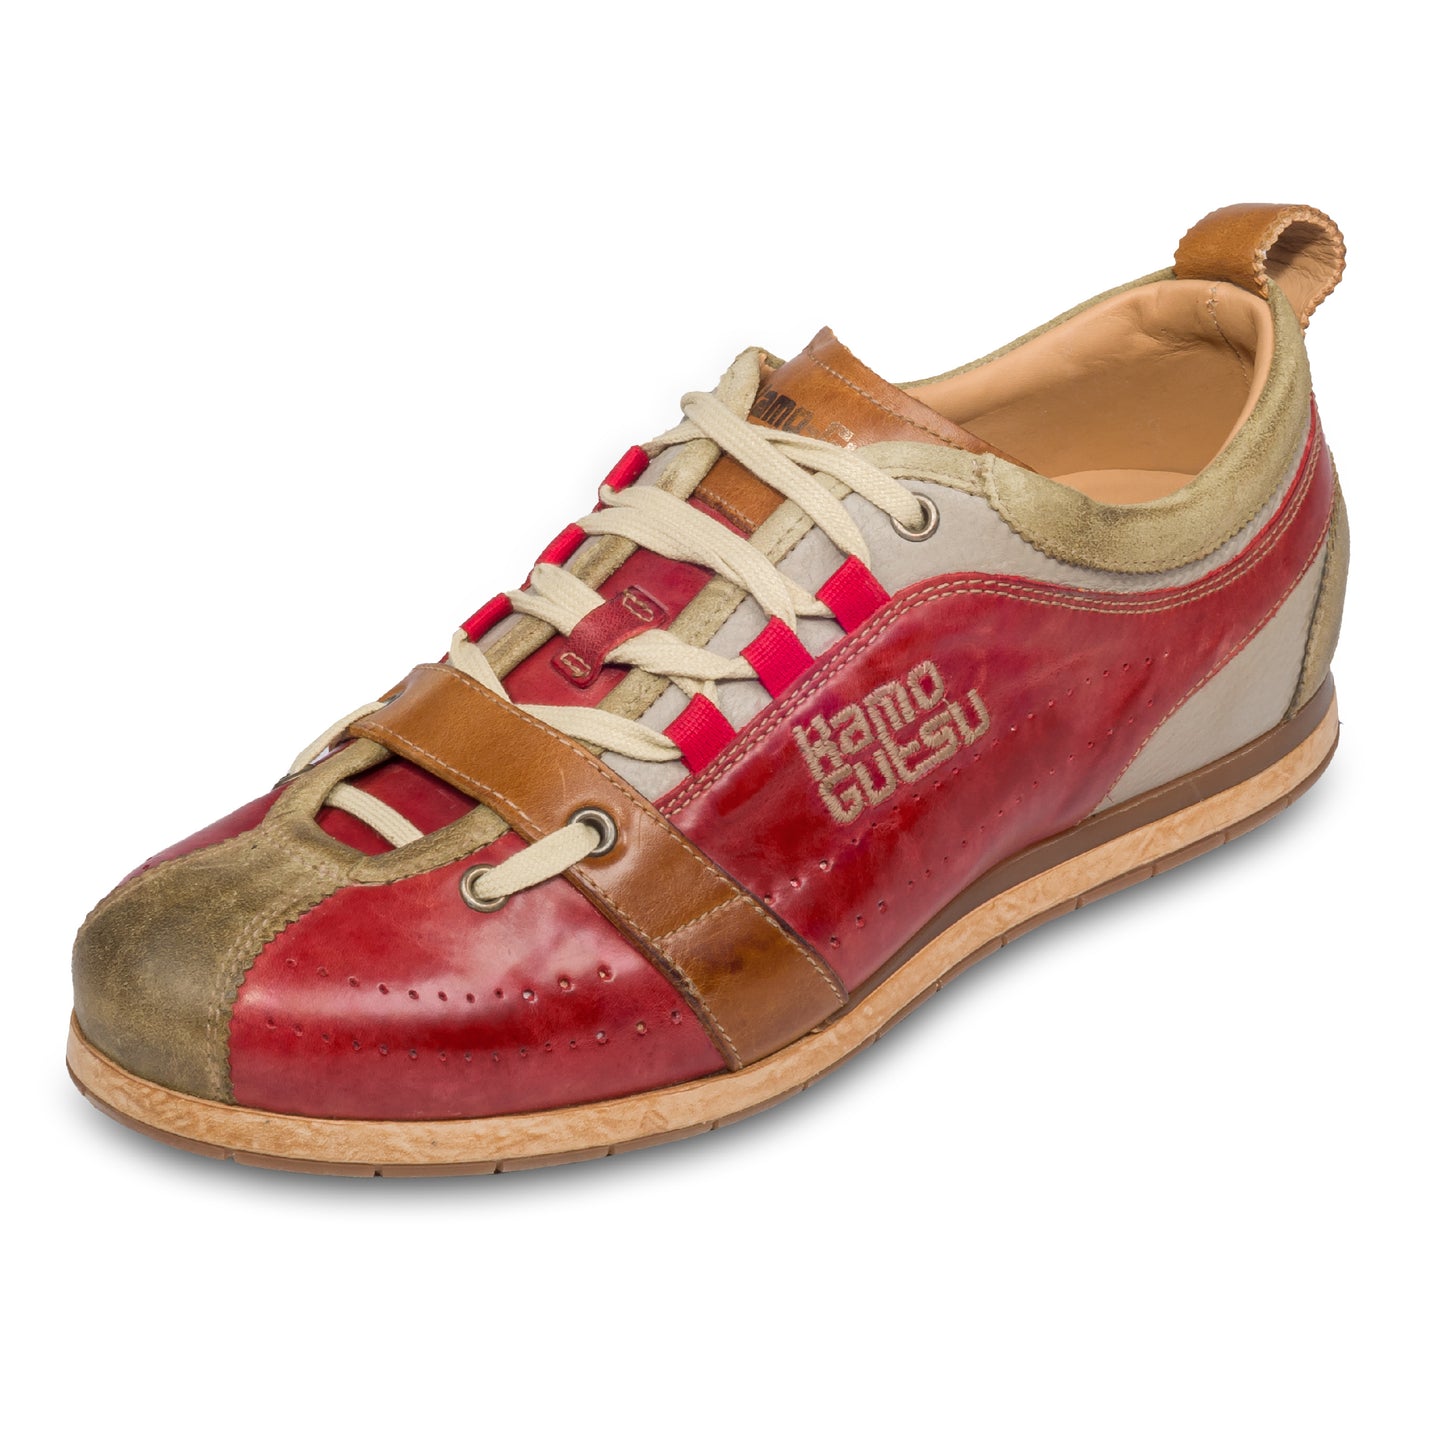 KAMO-GUTSU Herren Sneaker, rot/beige Retro-Optik, TIFO-017, schräge Ansicht einzelner Schuh